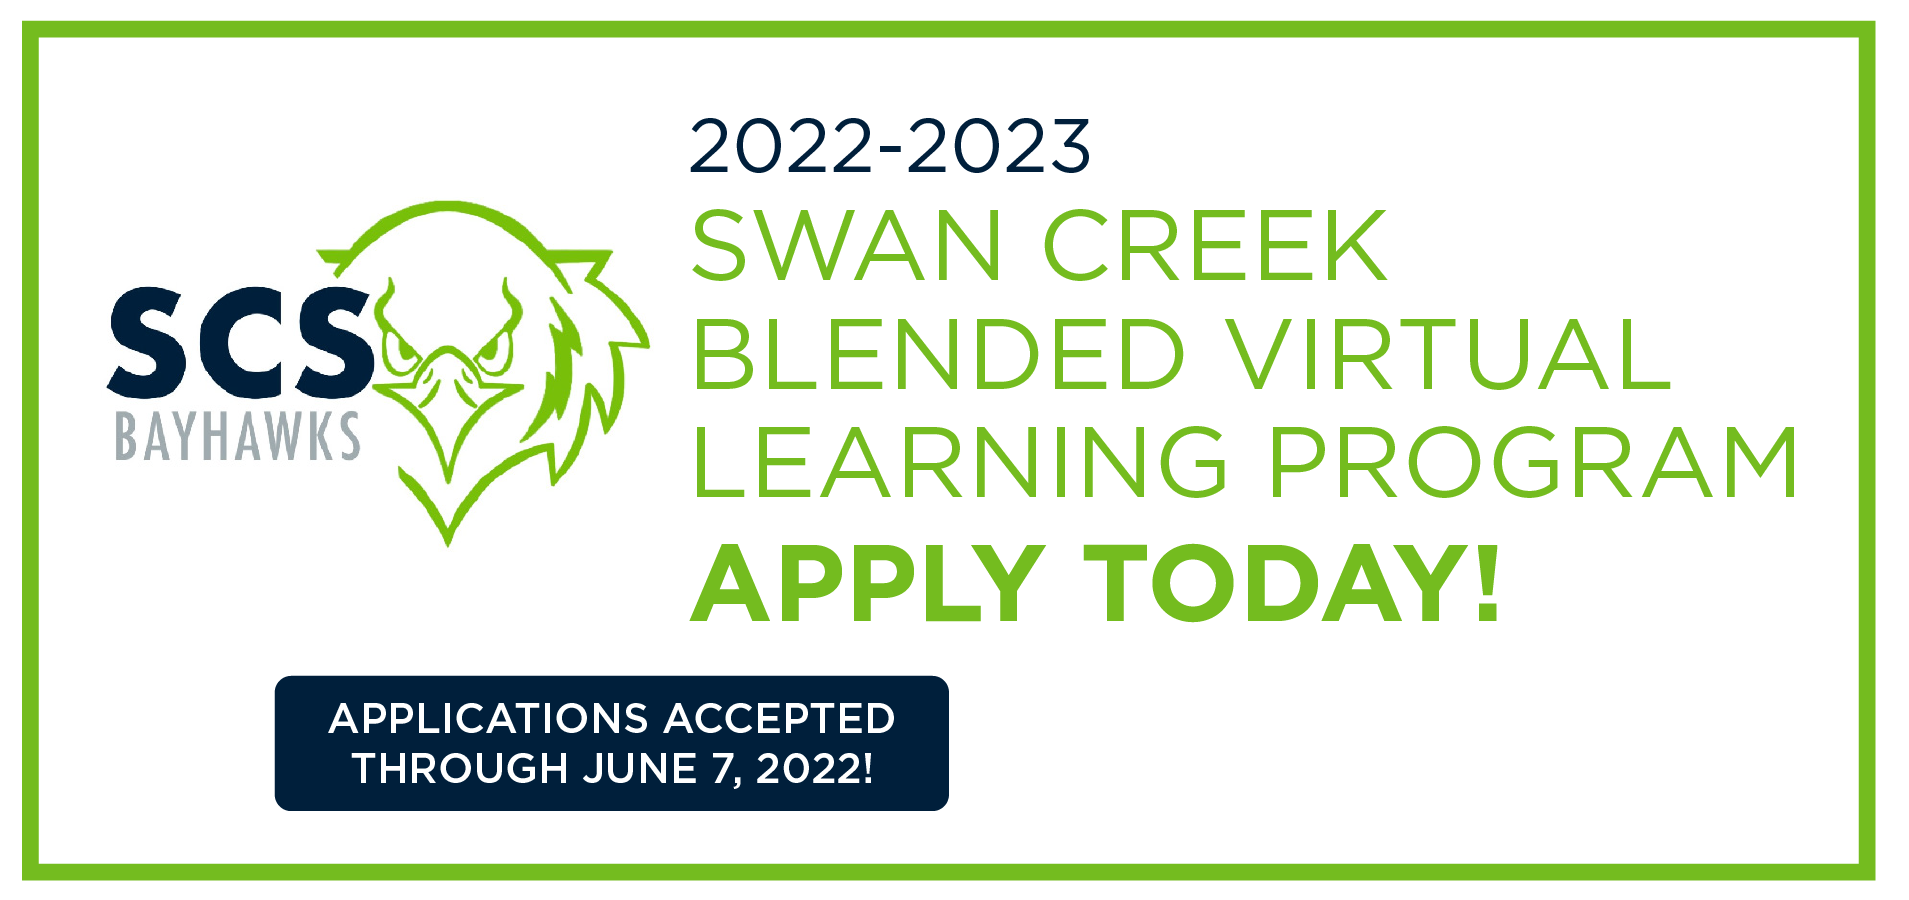 2022-2023 Swan Creek Blended Virtual Learning Program